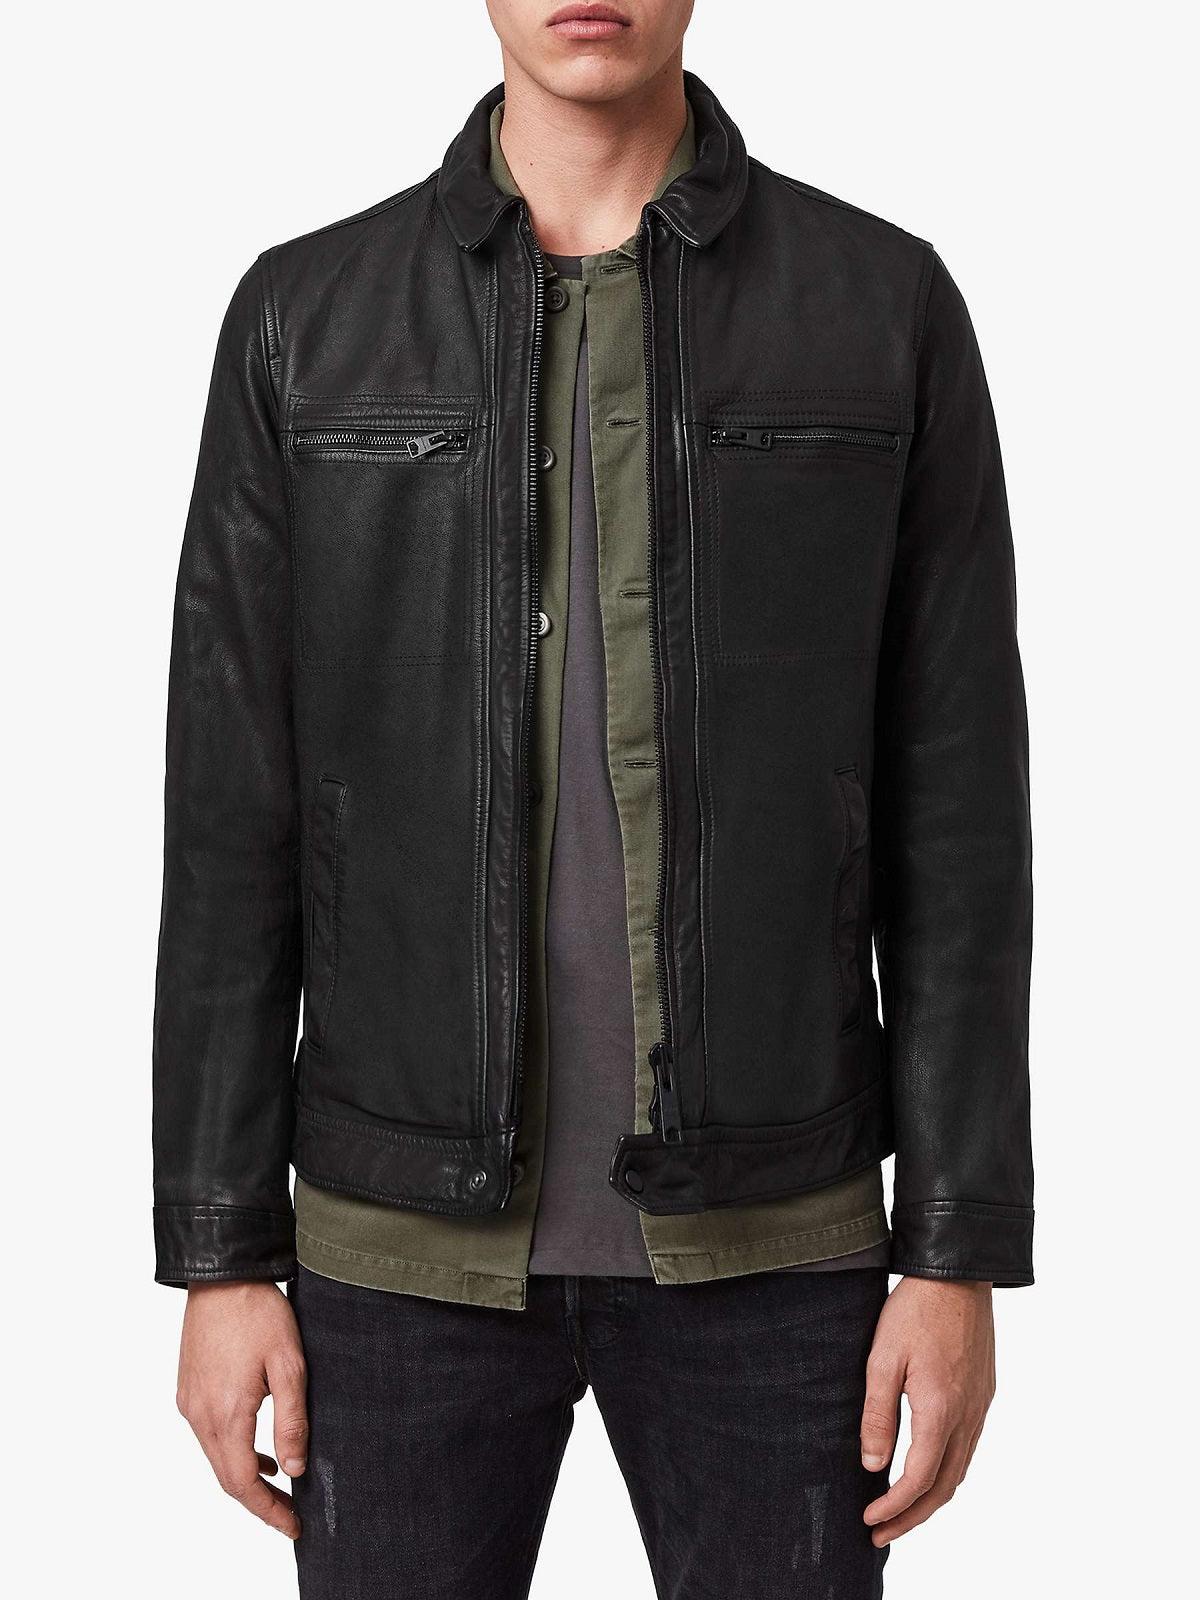 Men's Solid Black Leather Jacket